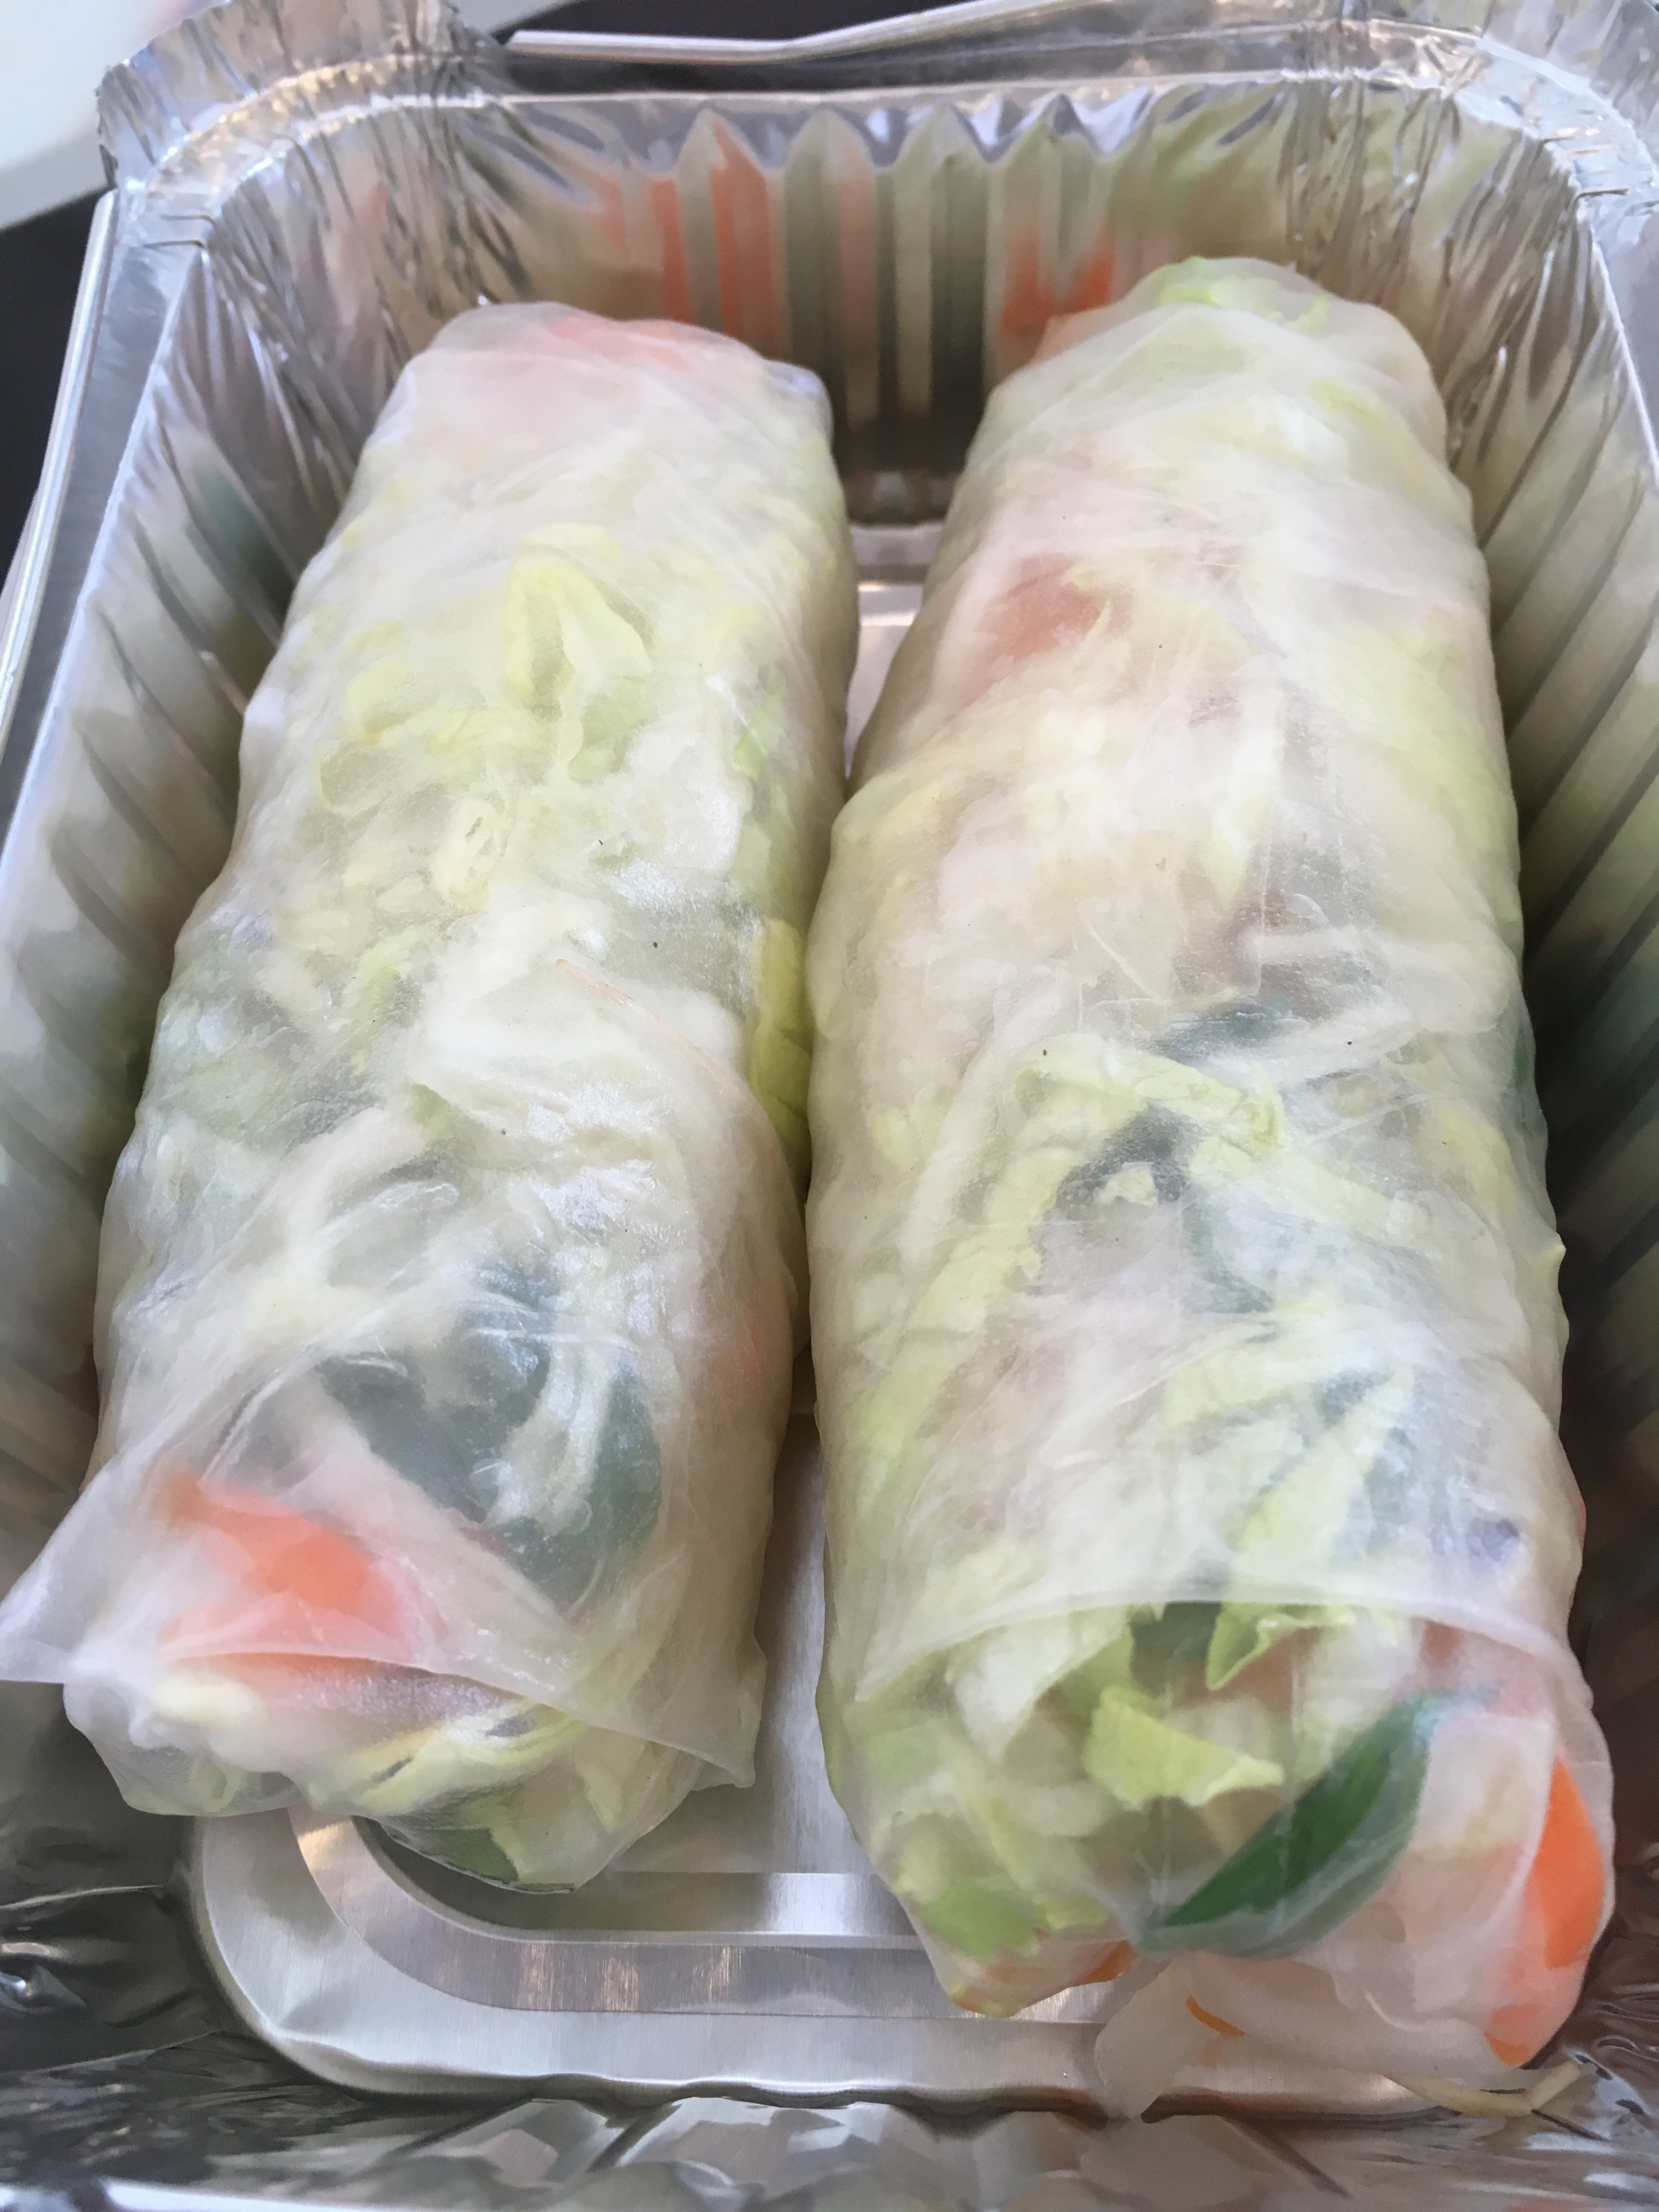 Saiguette vegetarian summer rolls